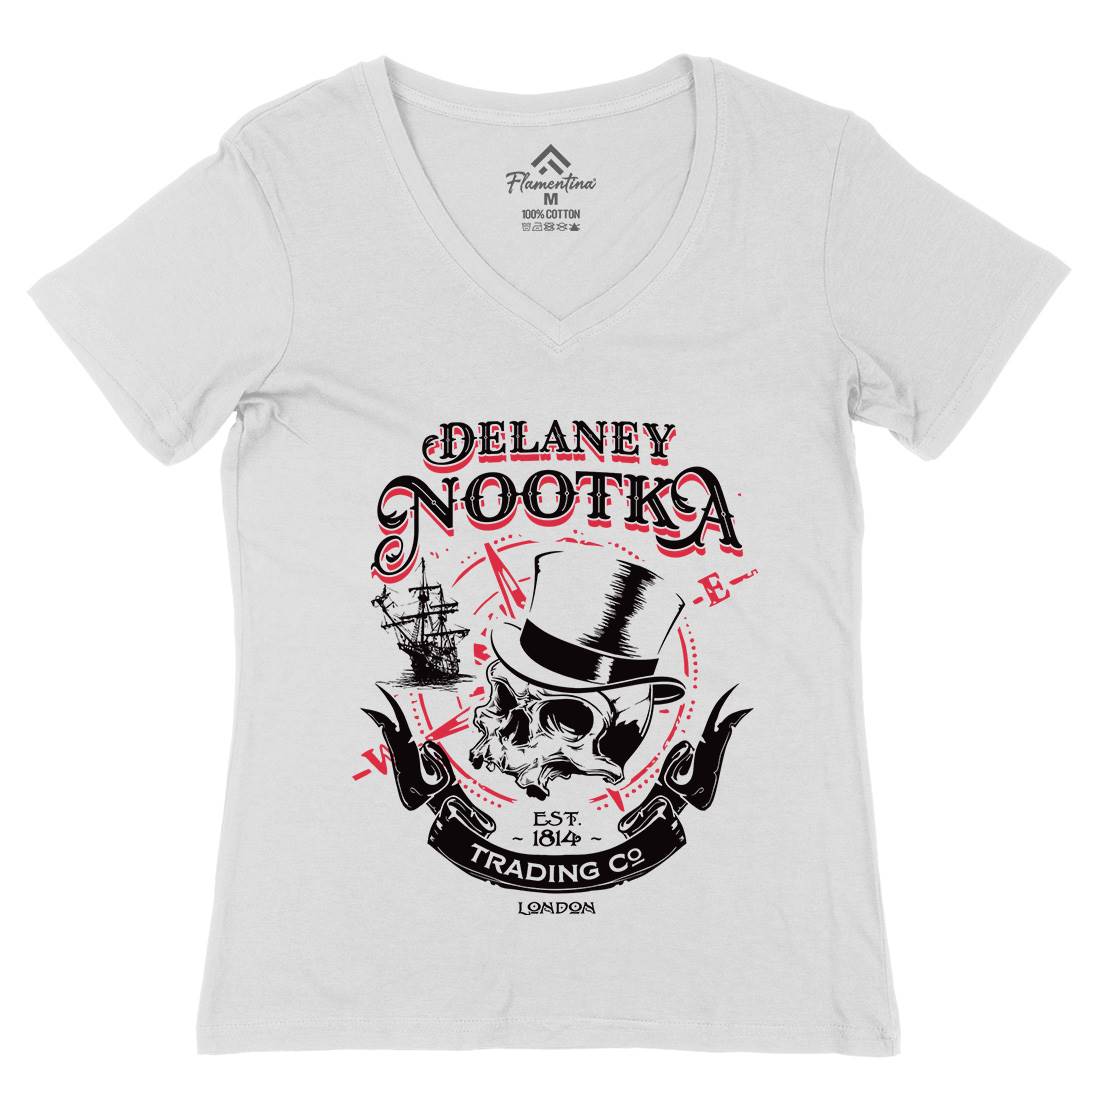 Delaney Nootka Womens Organic V-Neck T-Shirt Retro D183